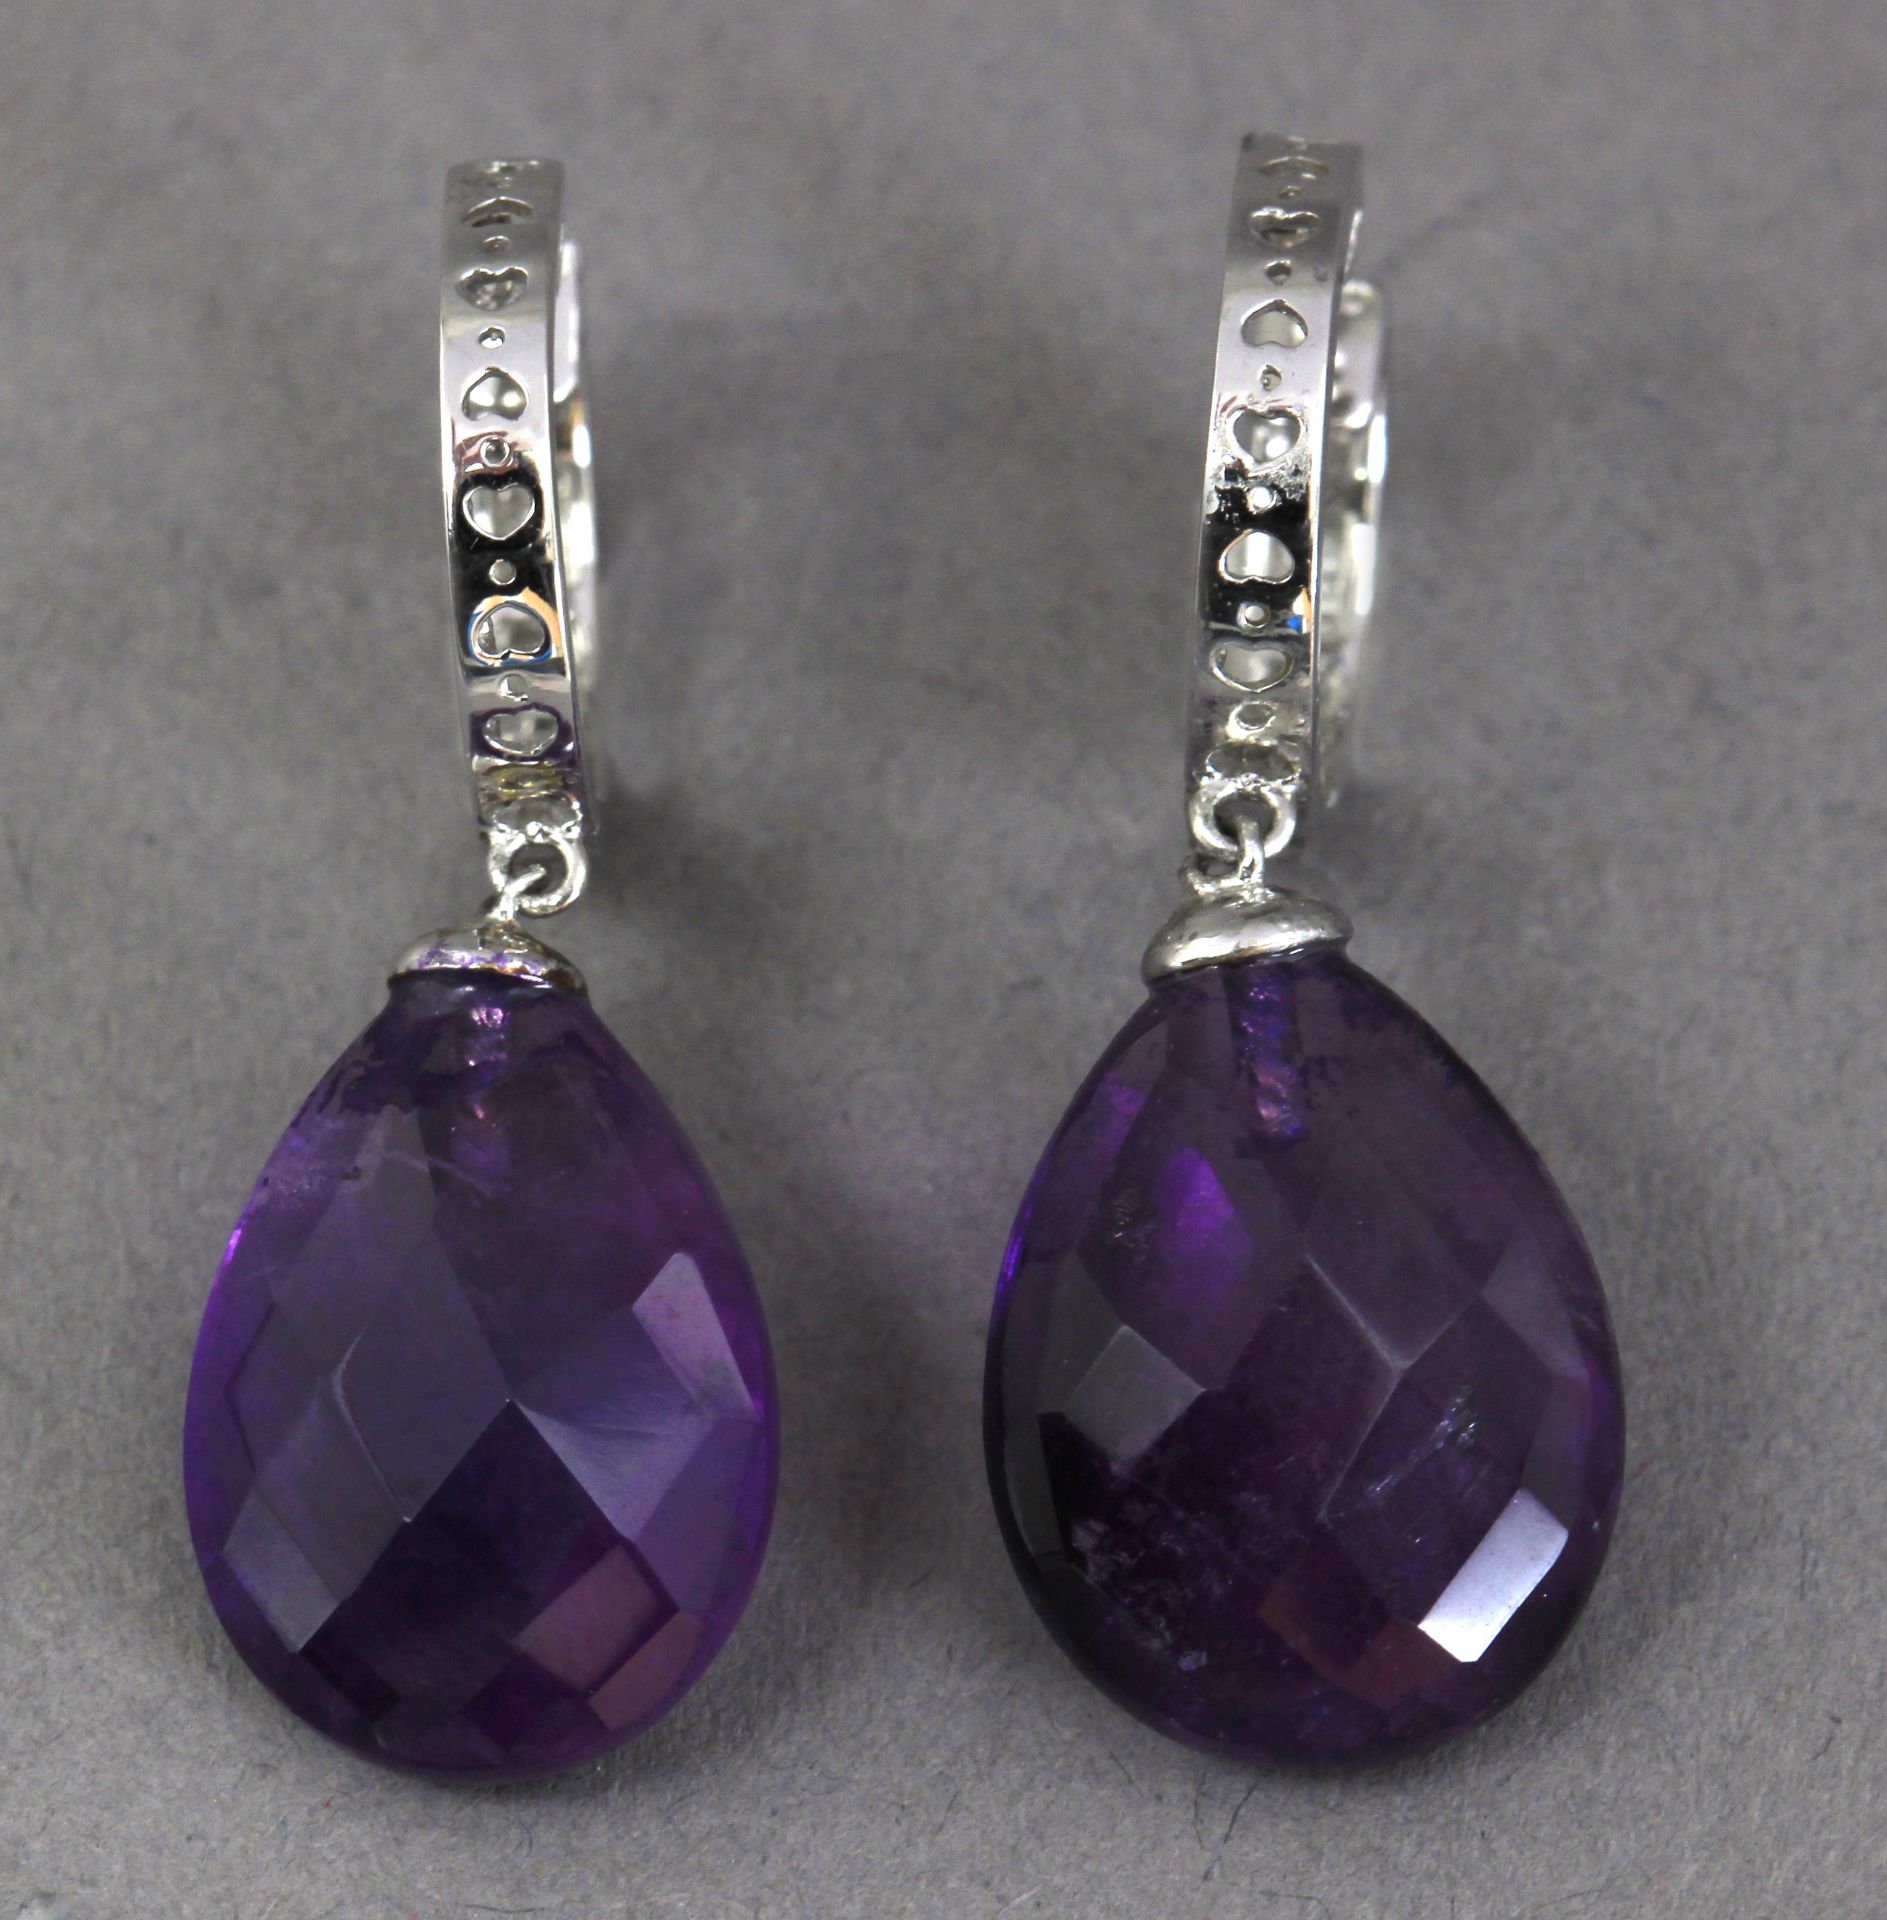 A pair of diamond hoop earrings with amethyst pendants - Image 3 of 4